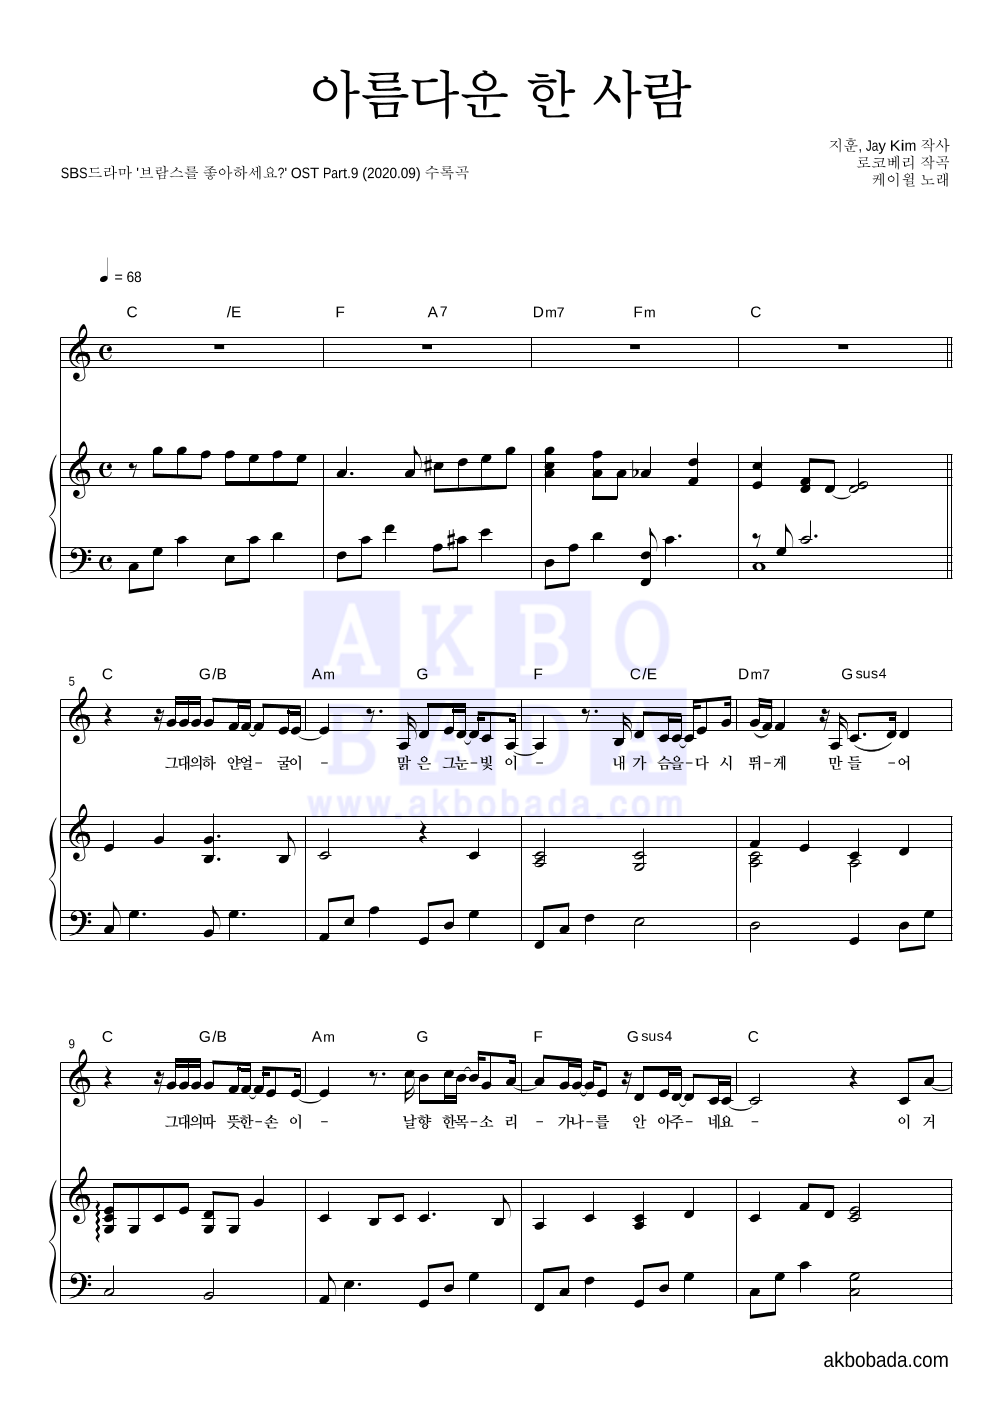 케이윌 - 아름다운 한 사람 피아노 3단 악보 